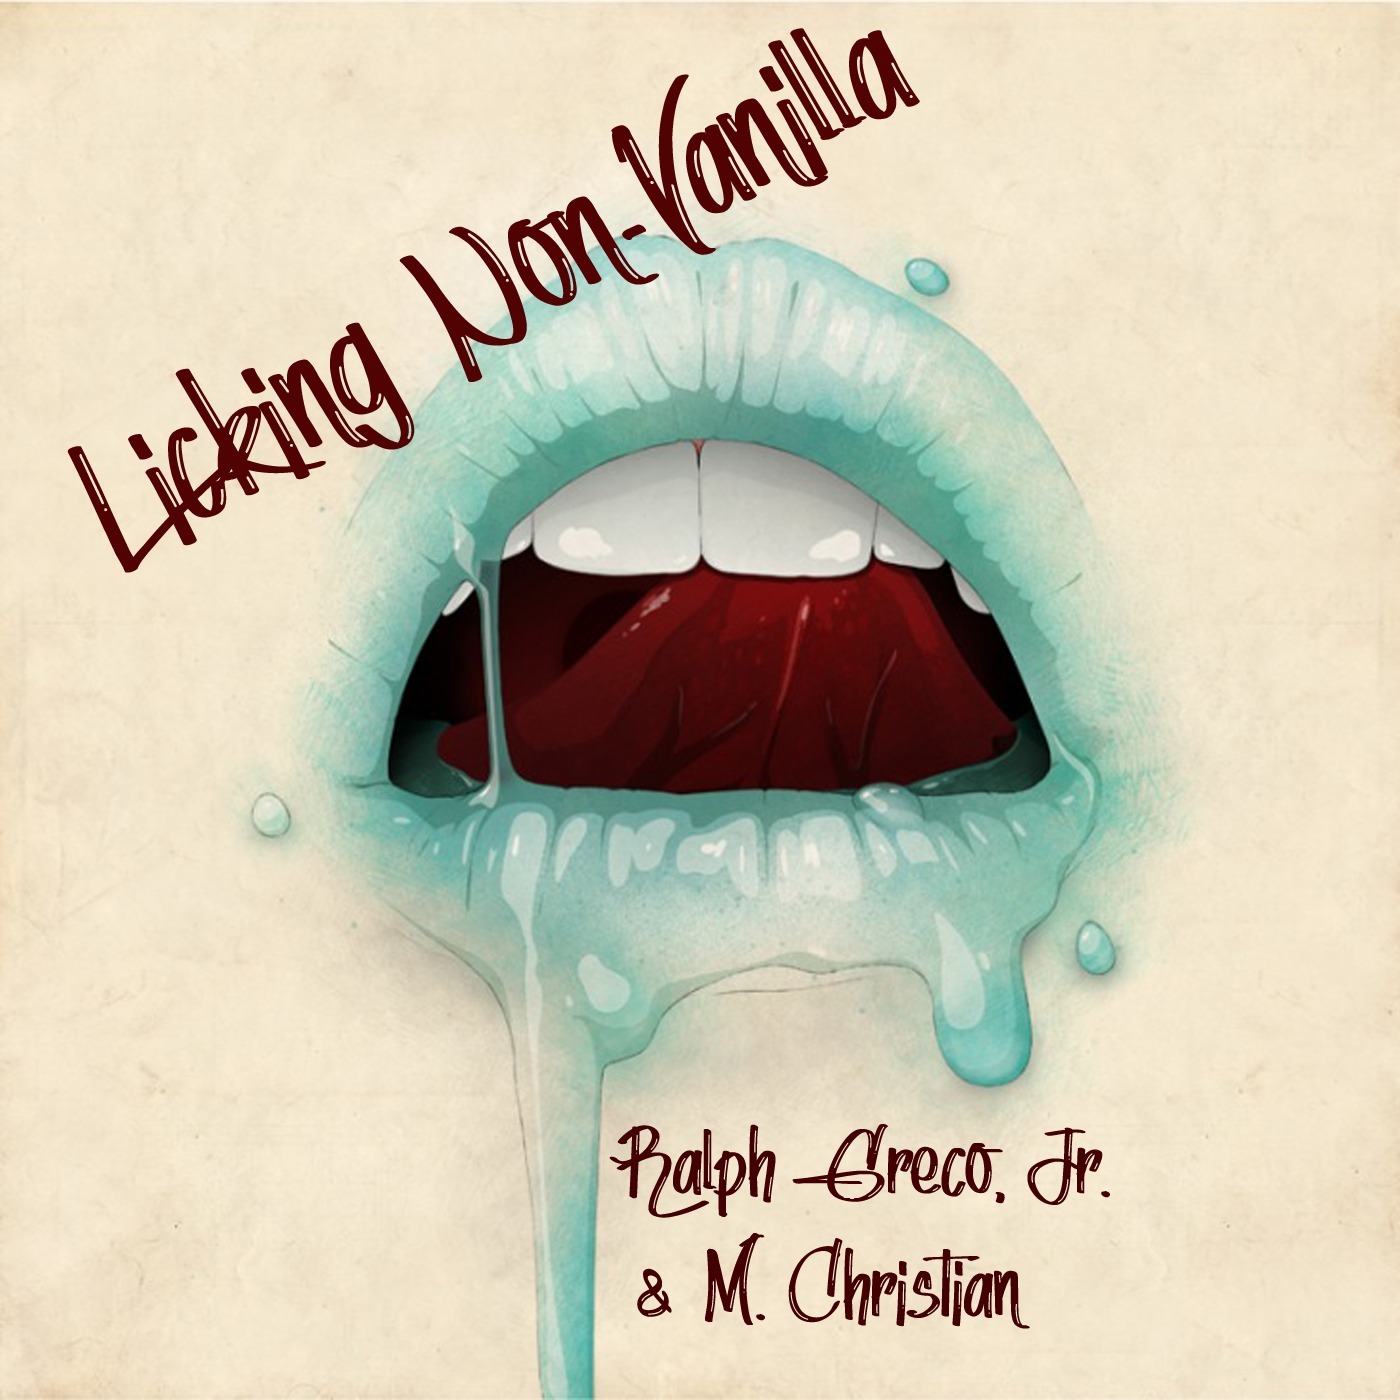 Licking Non-Vanilla - Licking Non-Vanilla - Episode 1